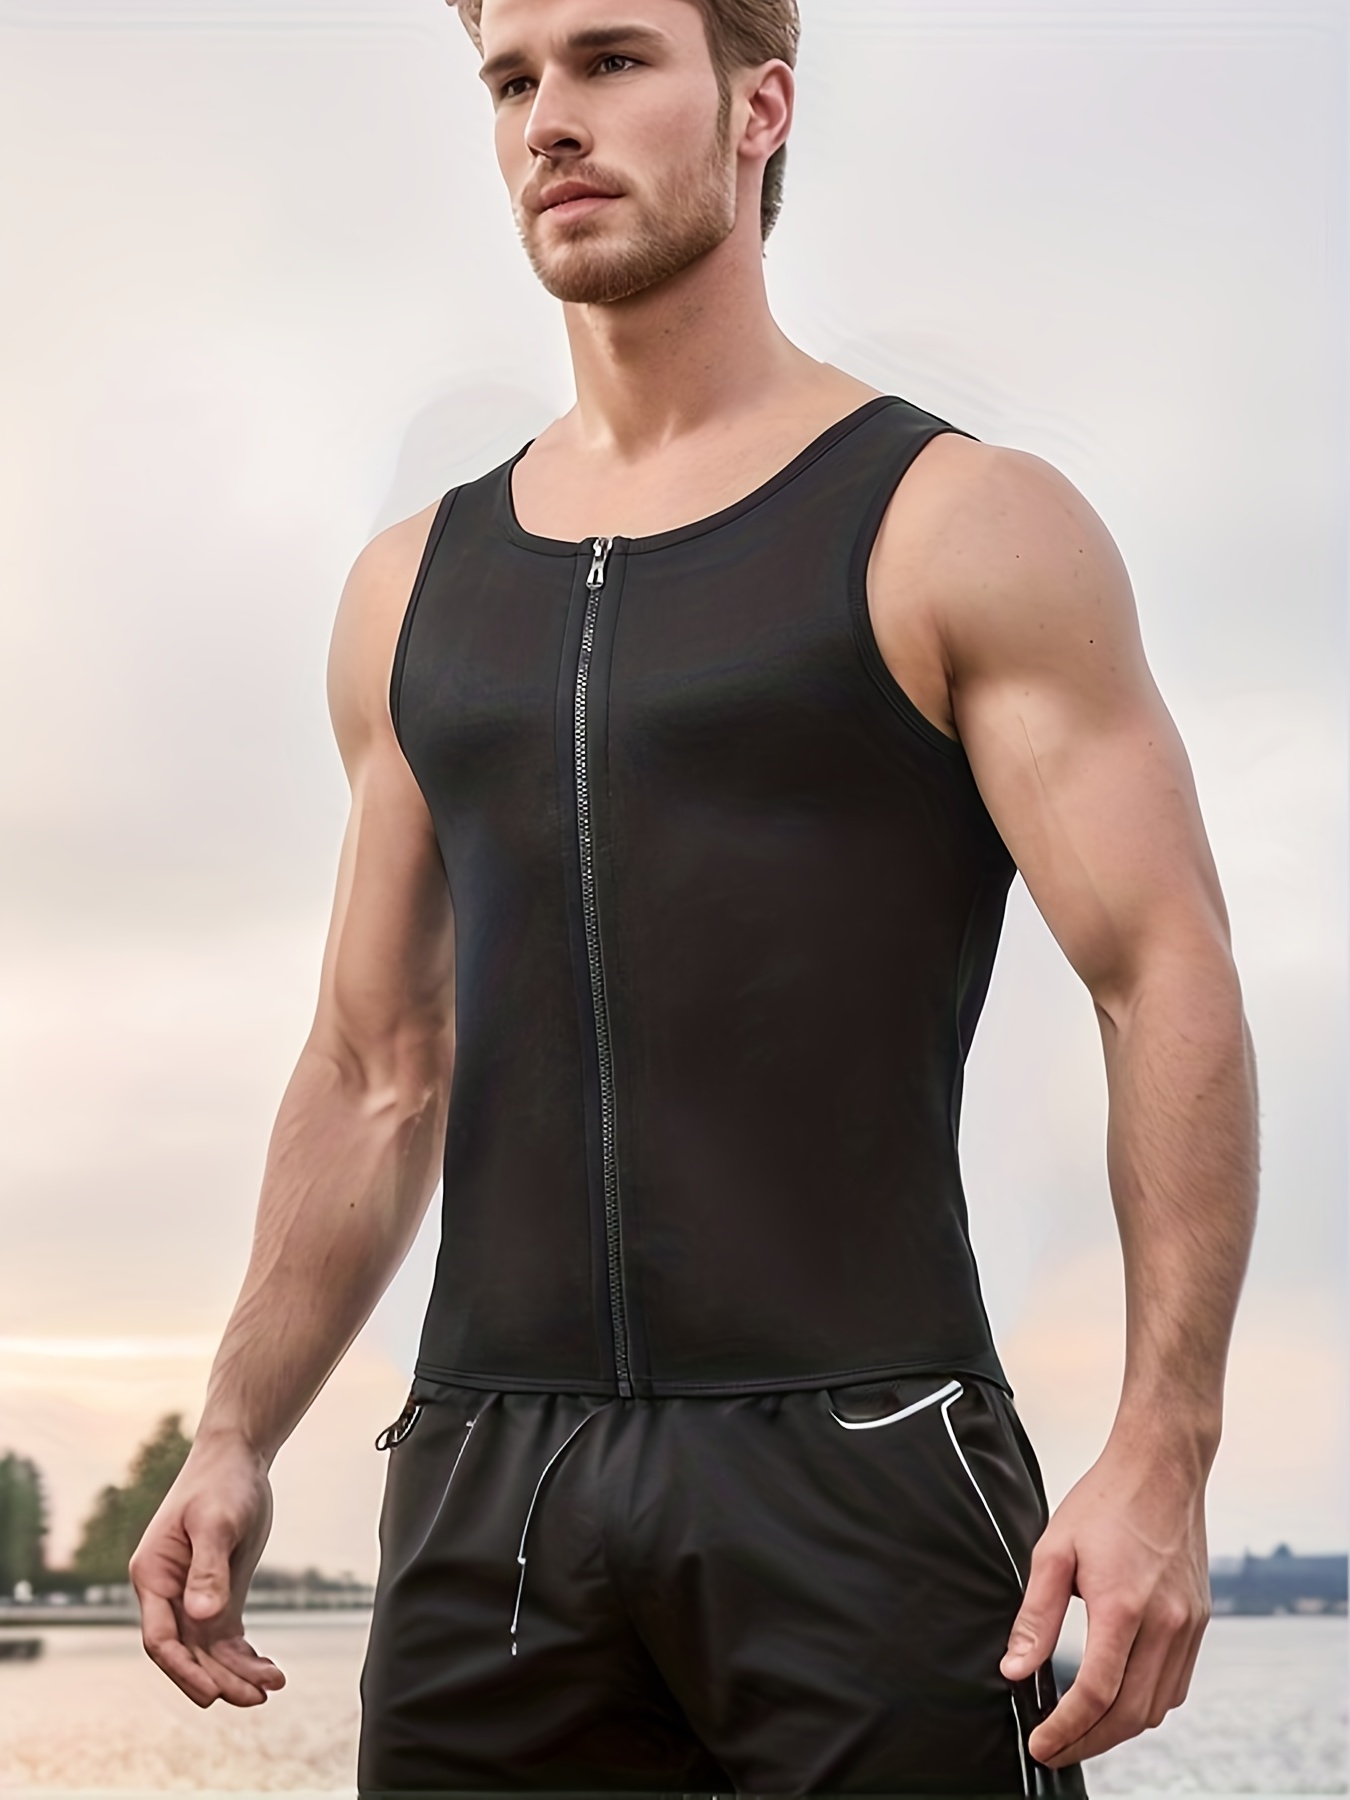 Men's Slimming Sweat Sauna Vest Waist Trainer Workout - Temu